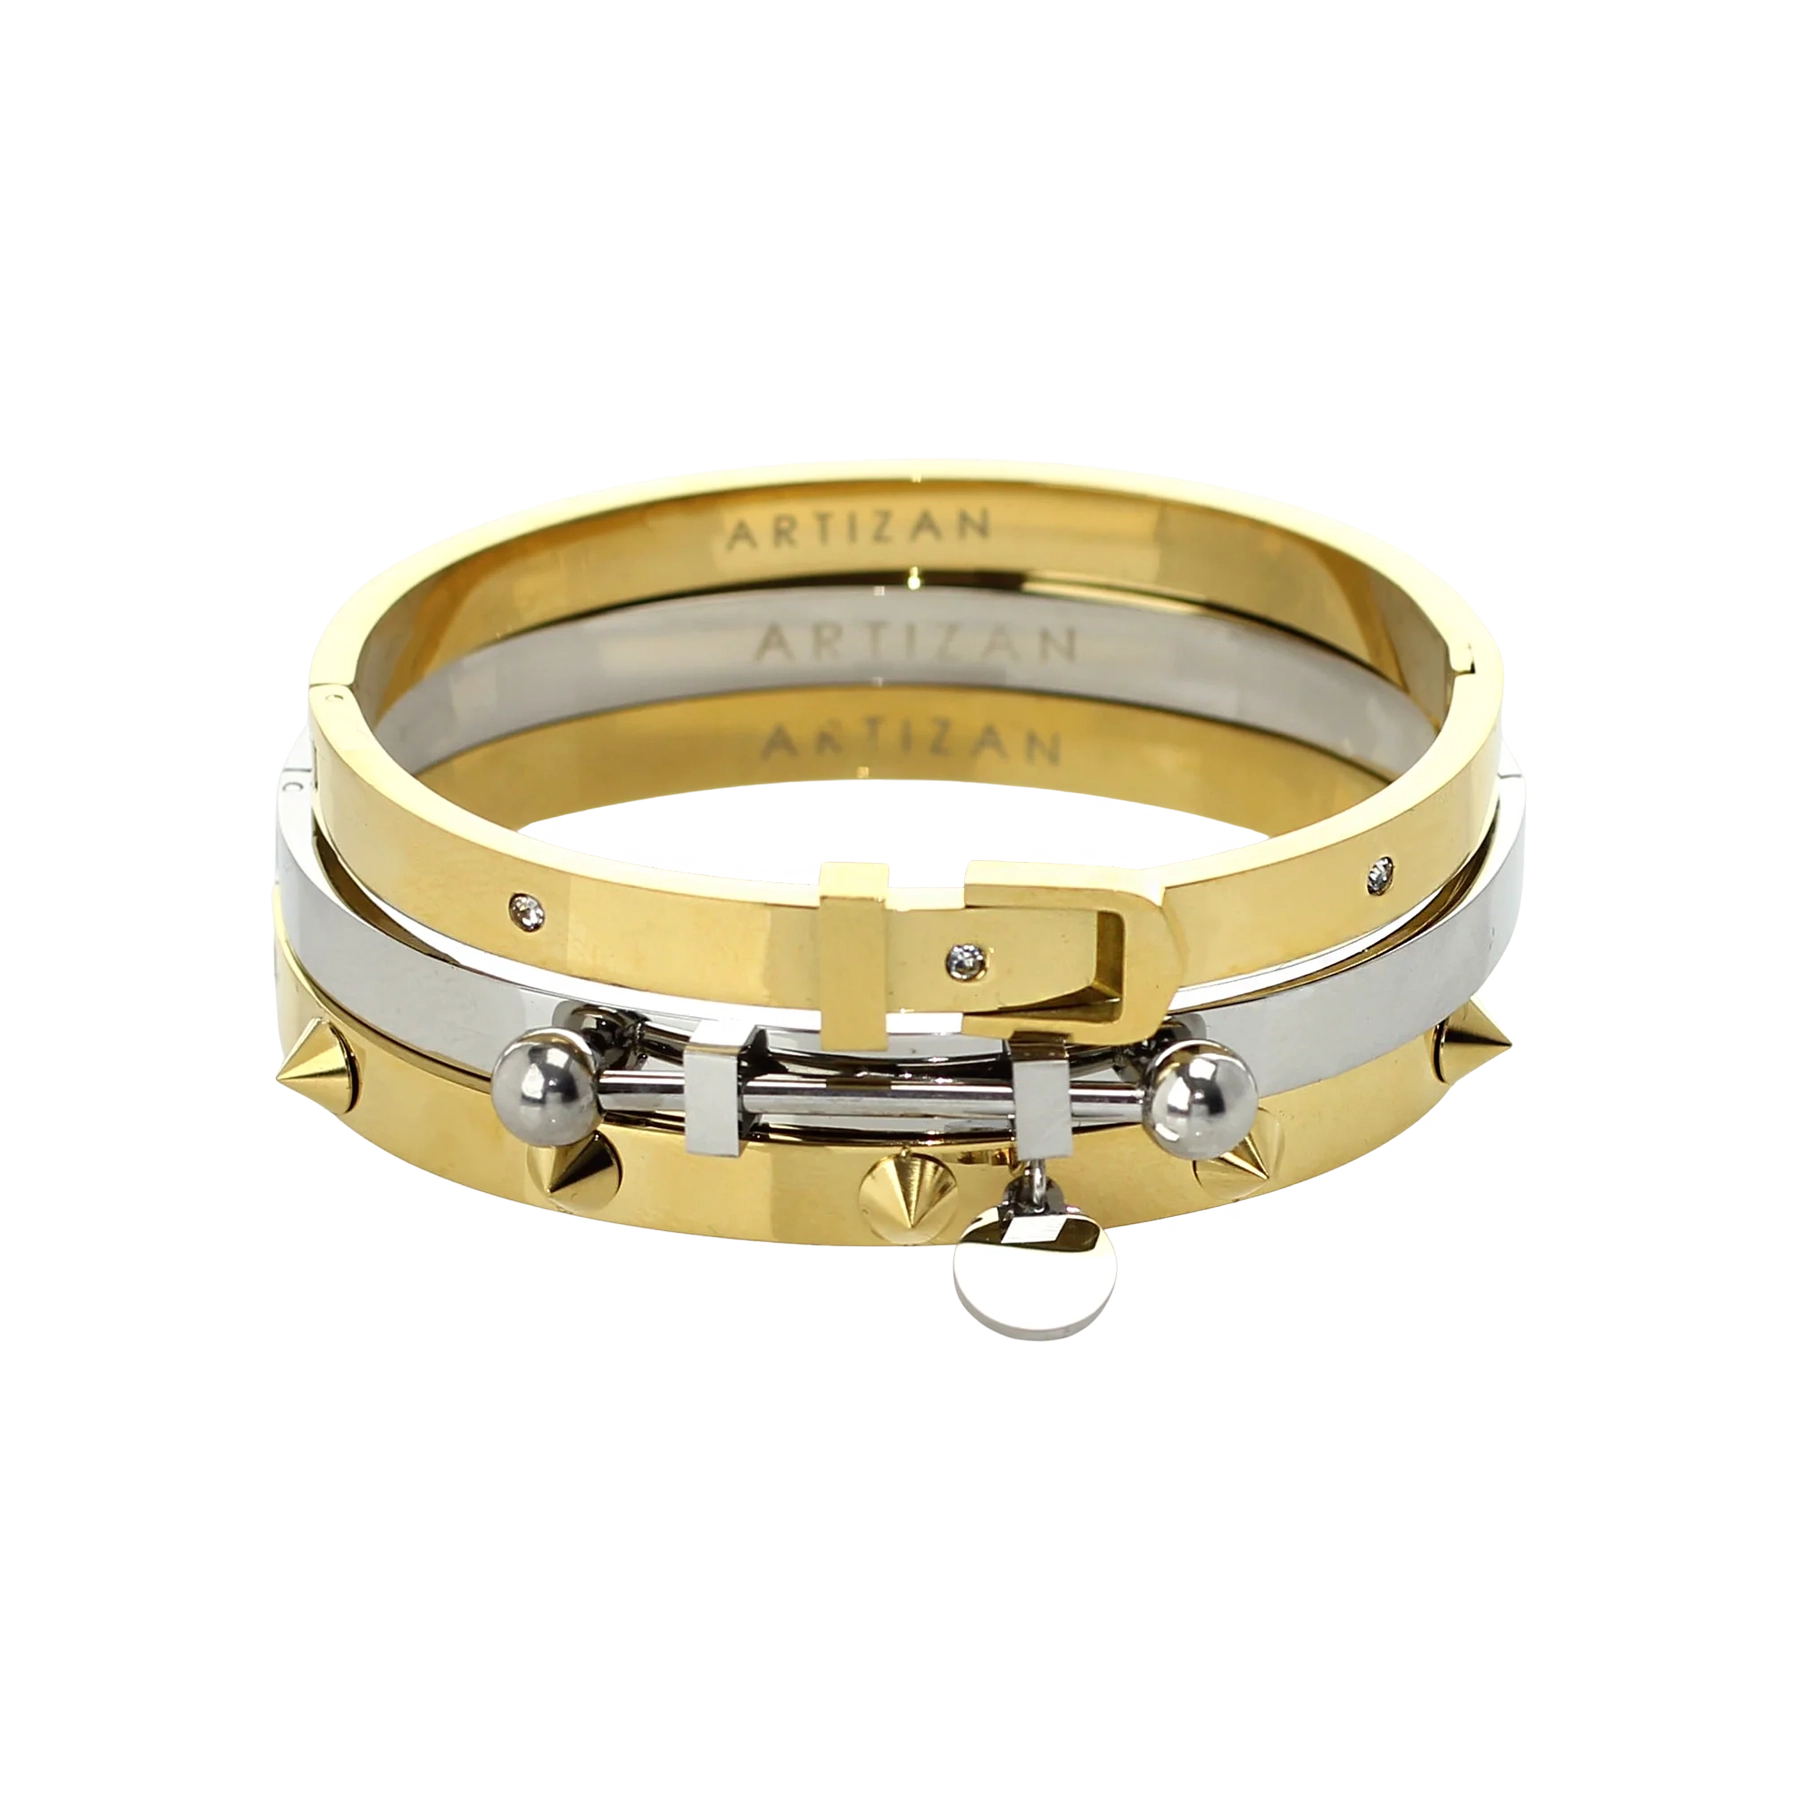 Cartier Love Bracelet Update + LV price increase 